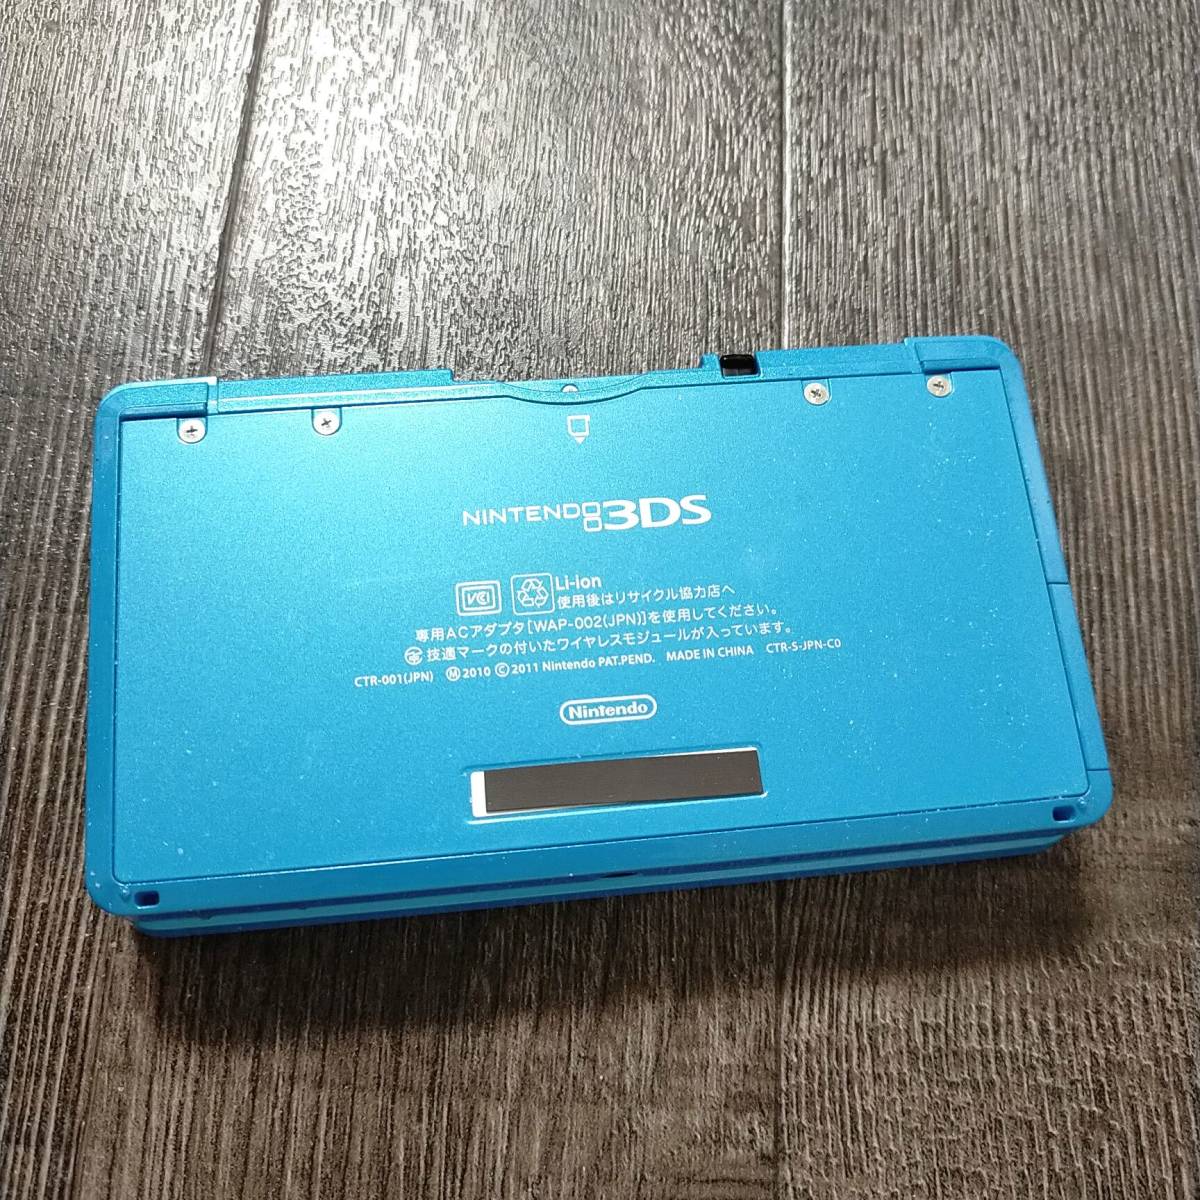 3ds 本体 モンスターハンター4 ハンターパック MH4 限定モデル NINTENDO 3DS 中古 任天堂 送料無料 動作◎ 32GB SDカード 透明カバー 0125